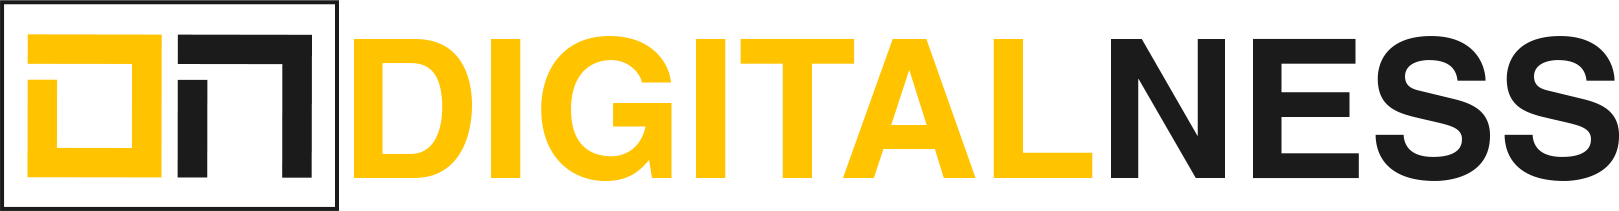 Digitalness logo